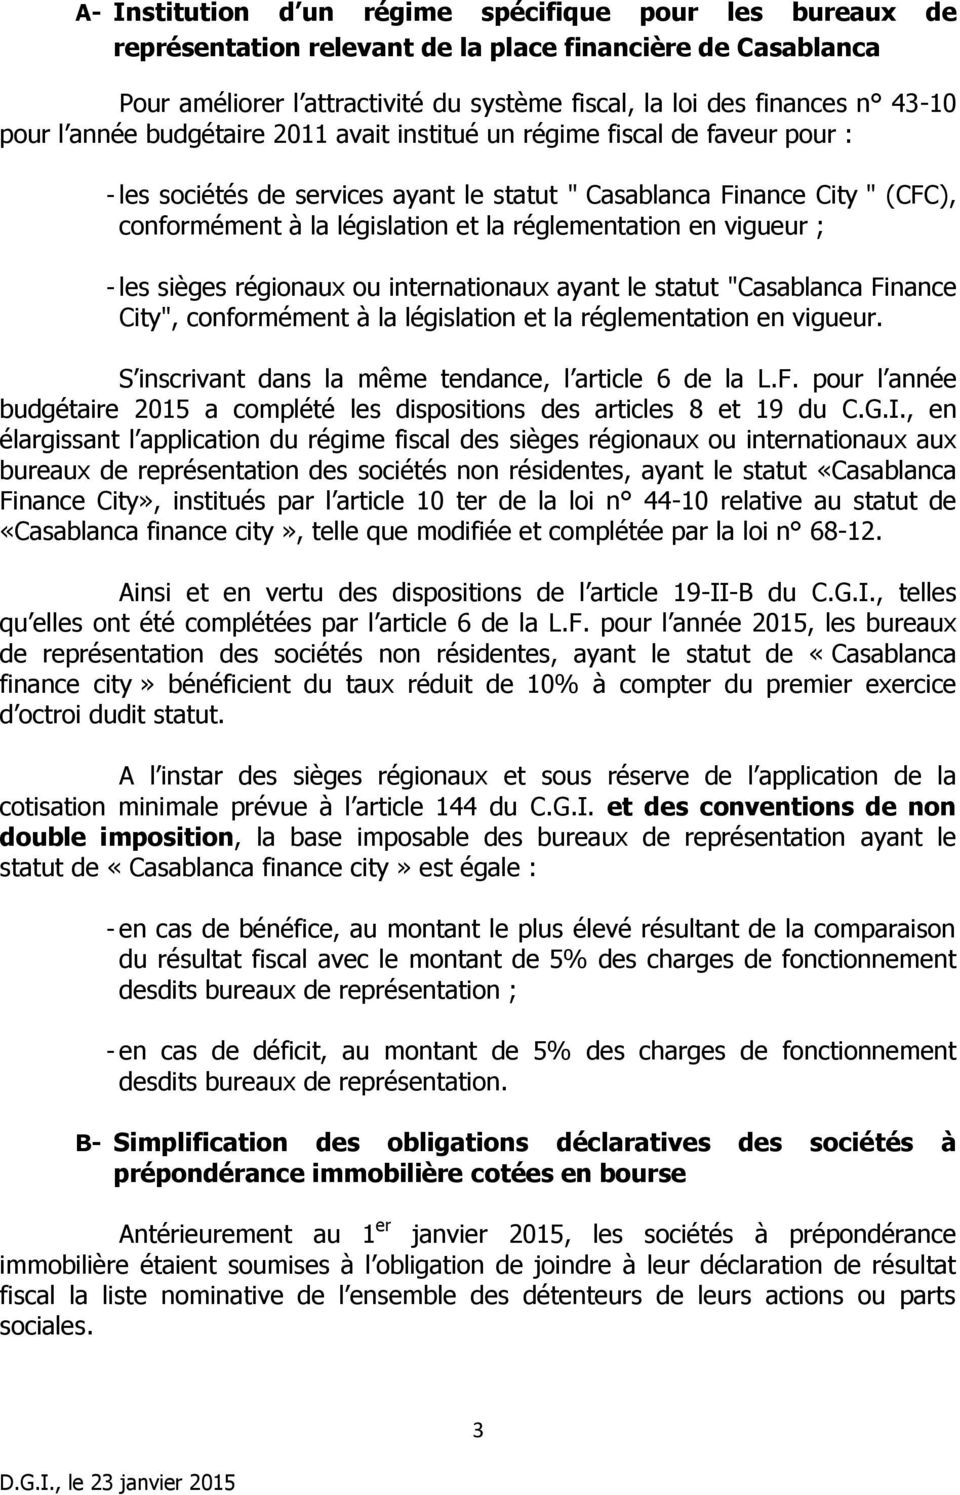 réglementation en vigueur ; - les sièges régionaux ou internationaux ayant le statut "Casablanca Finance City", conformément à la législation et la réglementation en vigueur.